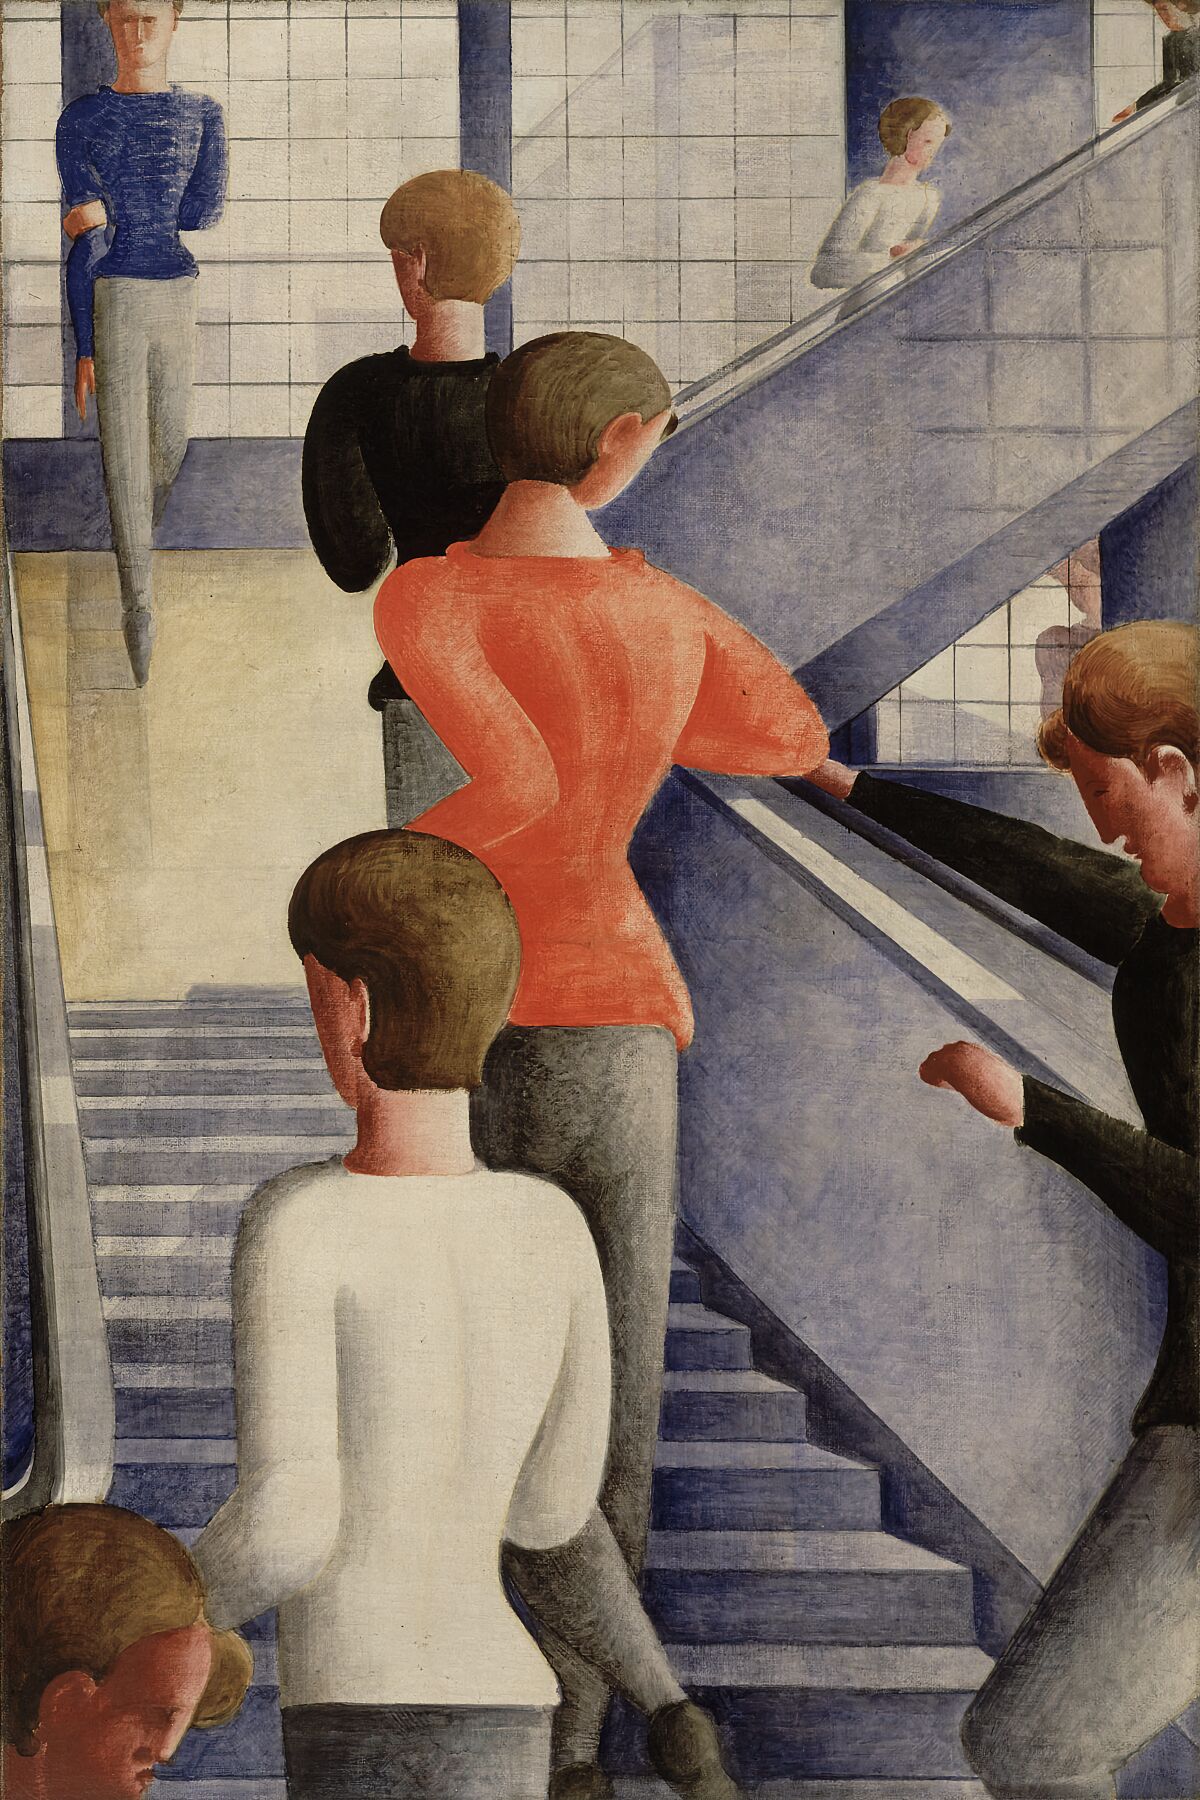 Bauhaus Stairway by Oskar Schlemmer - 1932